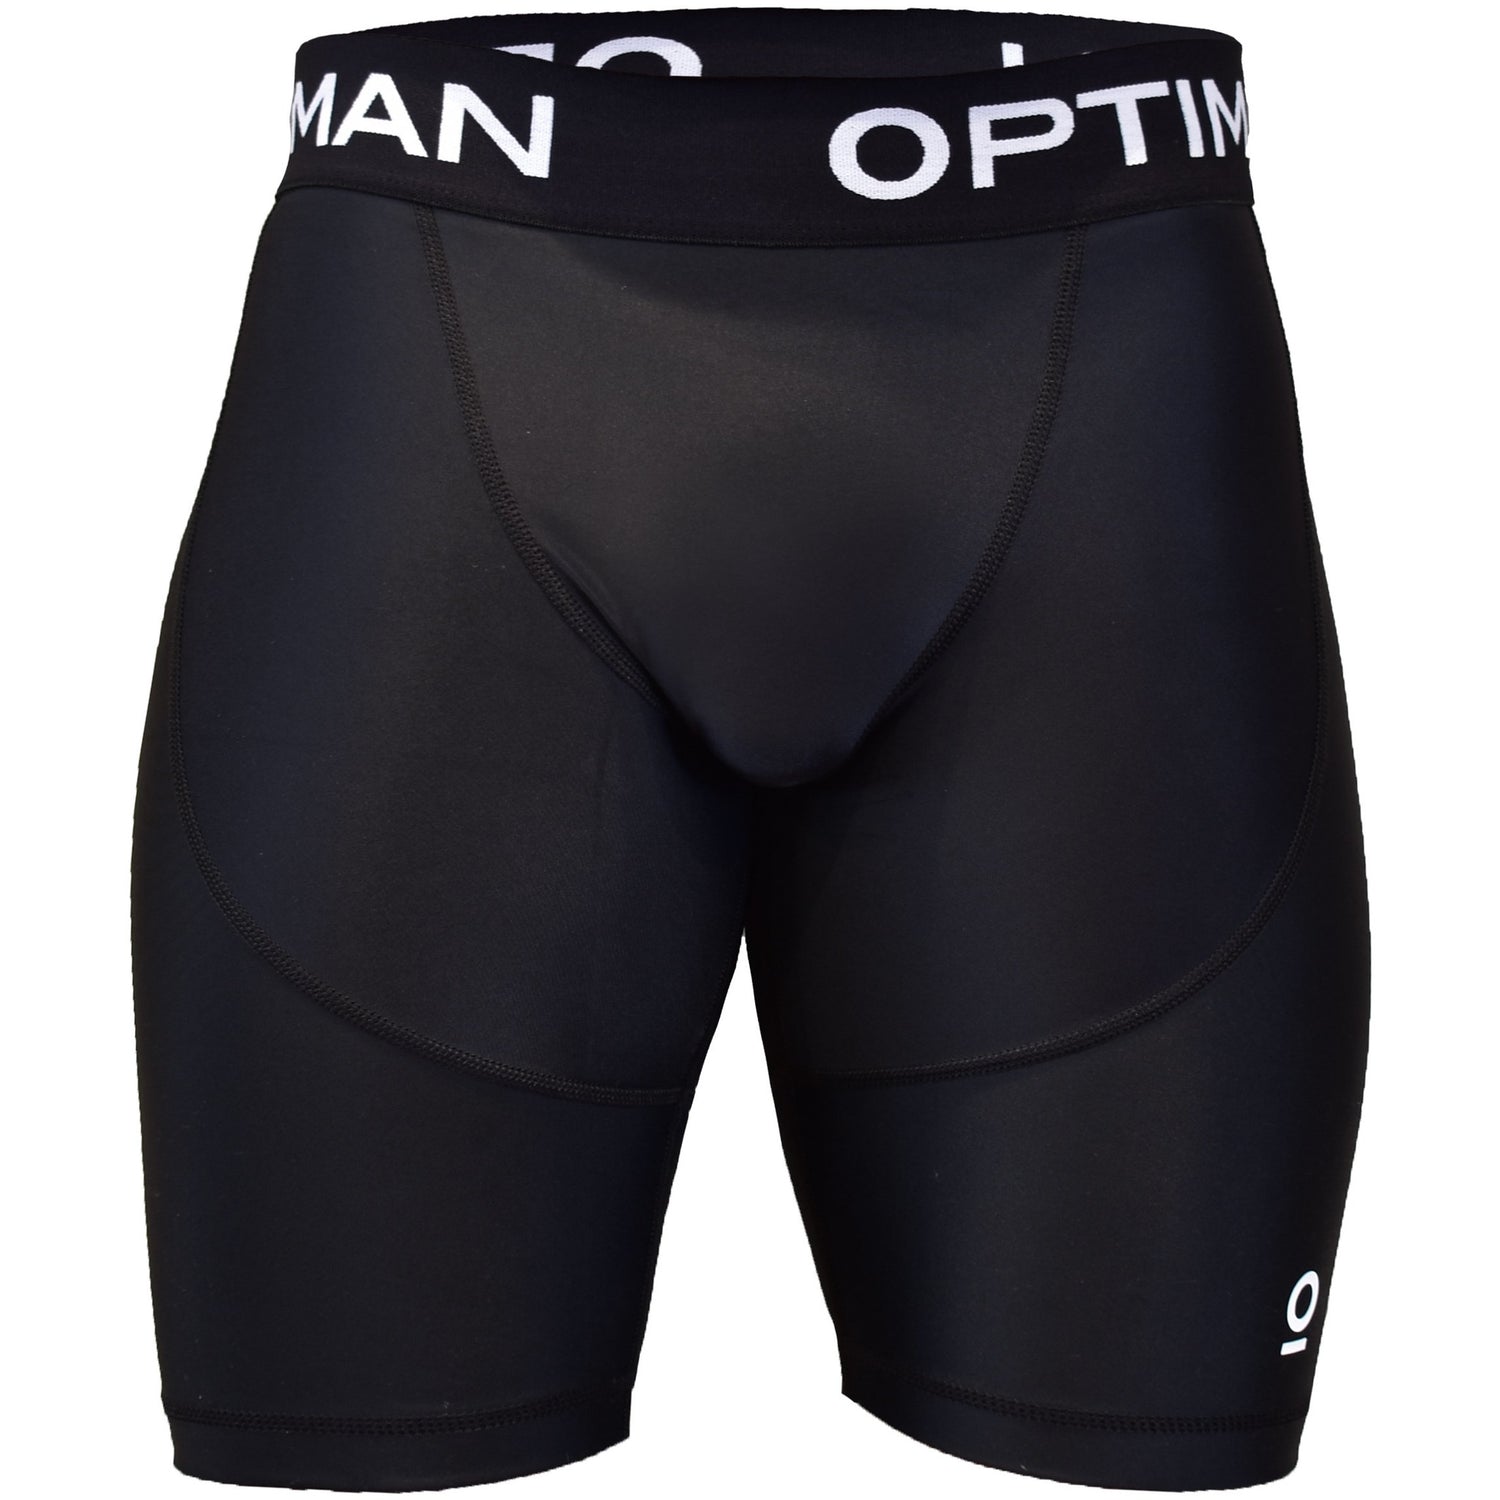 Compression Shorts for Sport, Men, Black